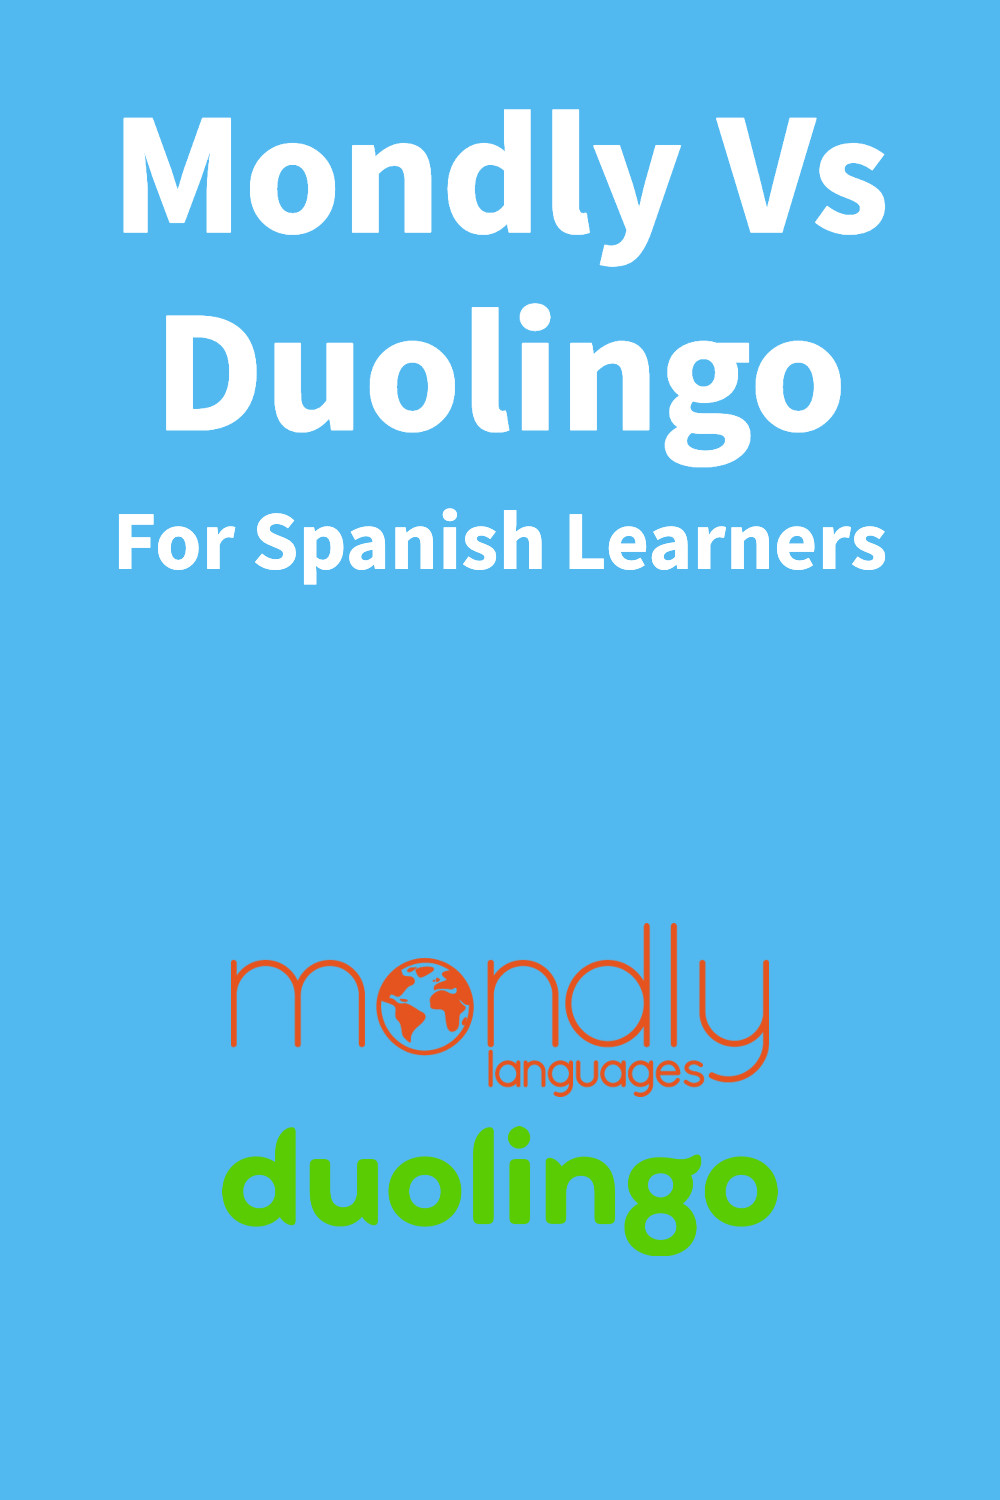 Duolingo Vs Mondly Language Learning Apps